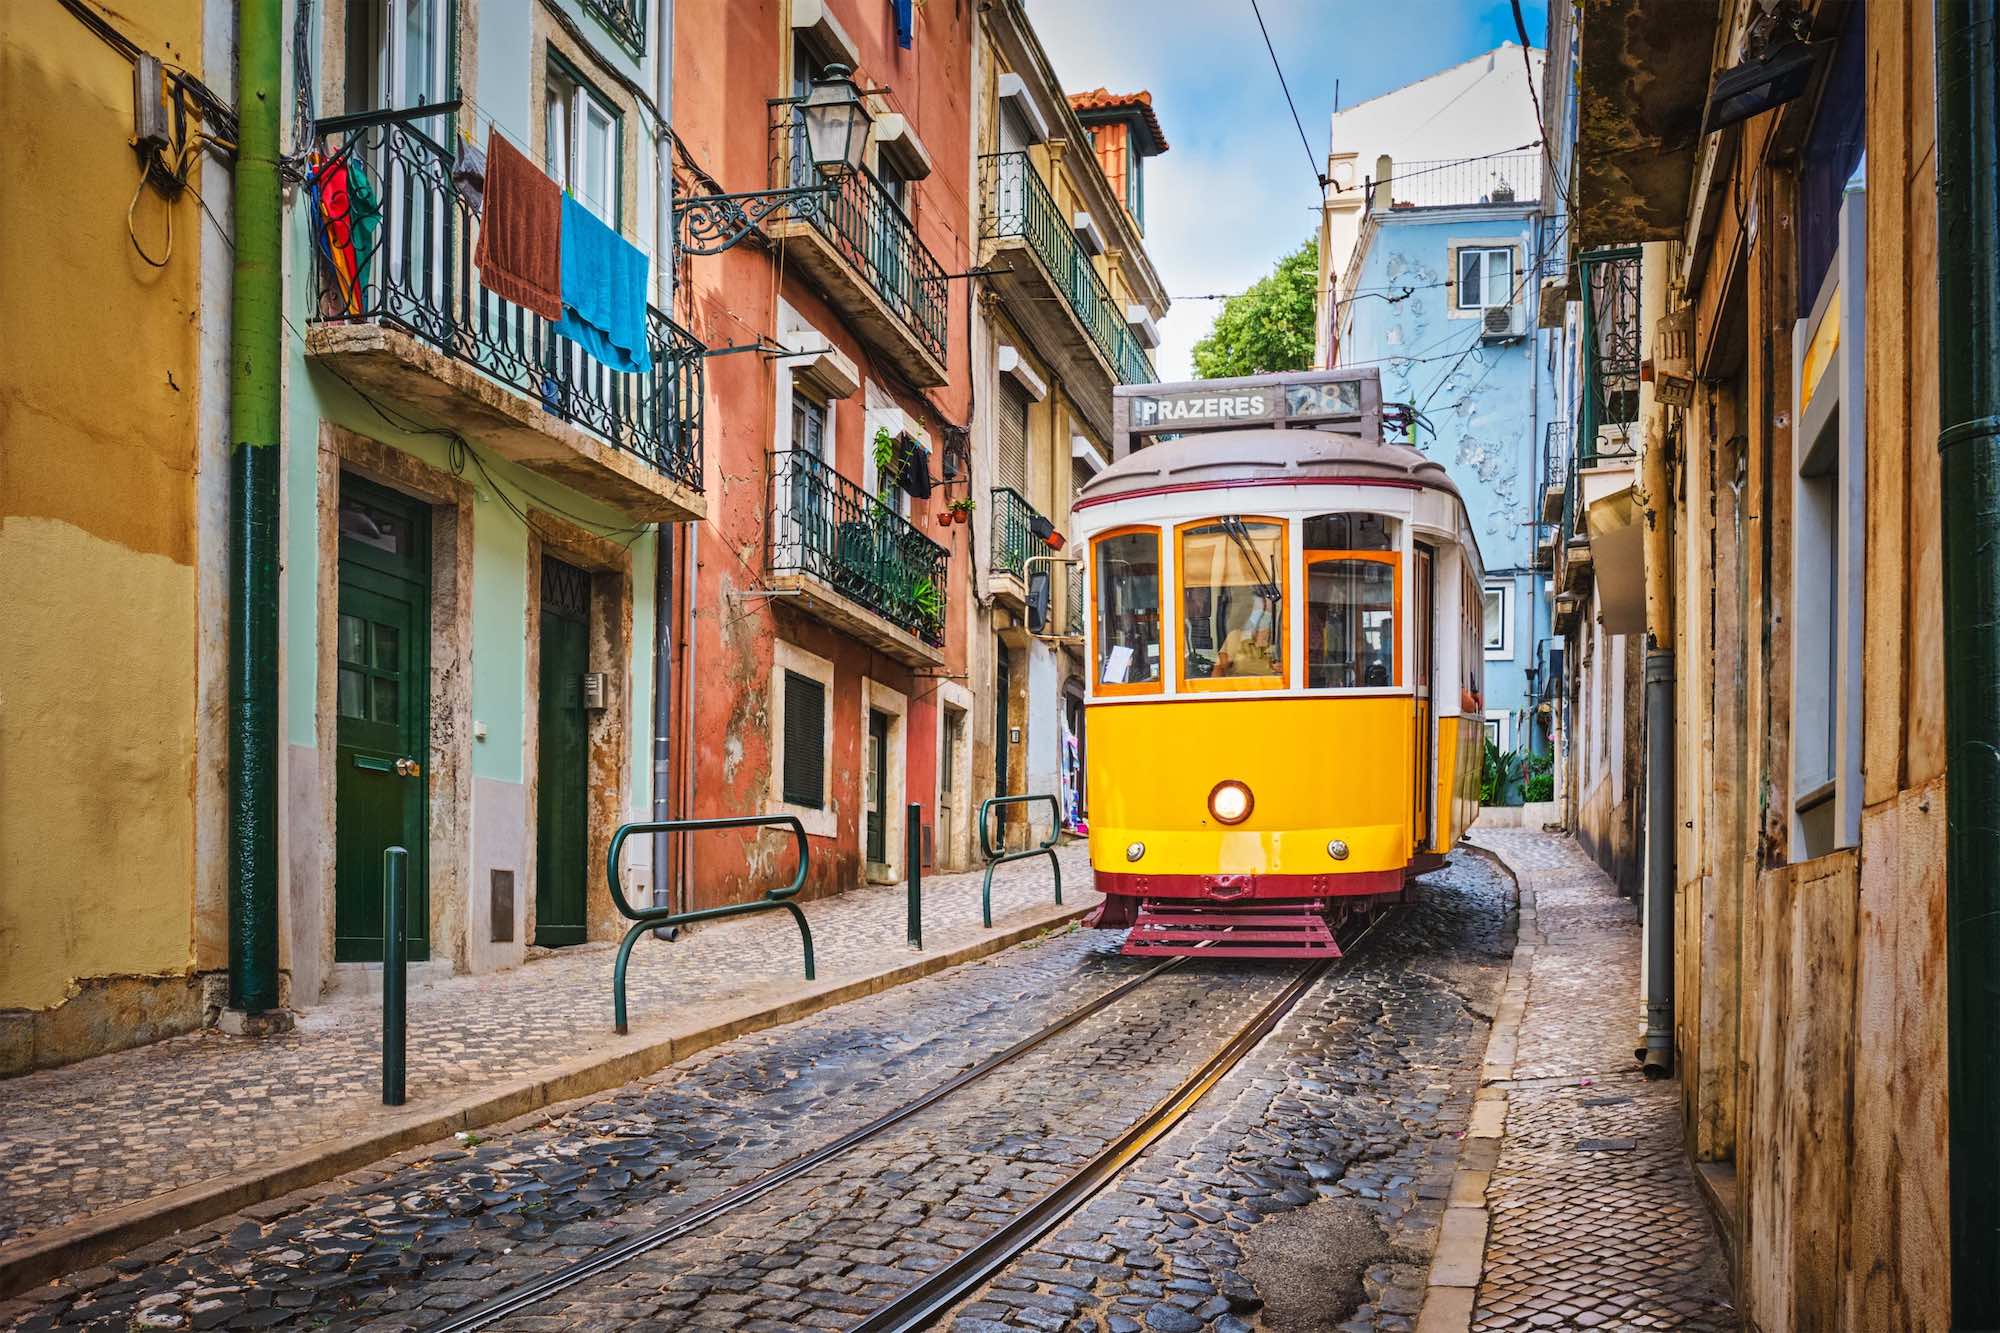 Van life au Portugal : itinéraire d'une semaine pour un road trip parfait  -  visuel 1/1